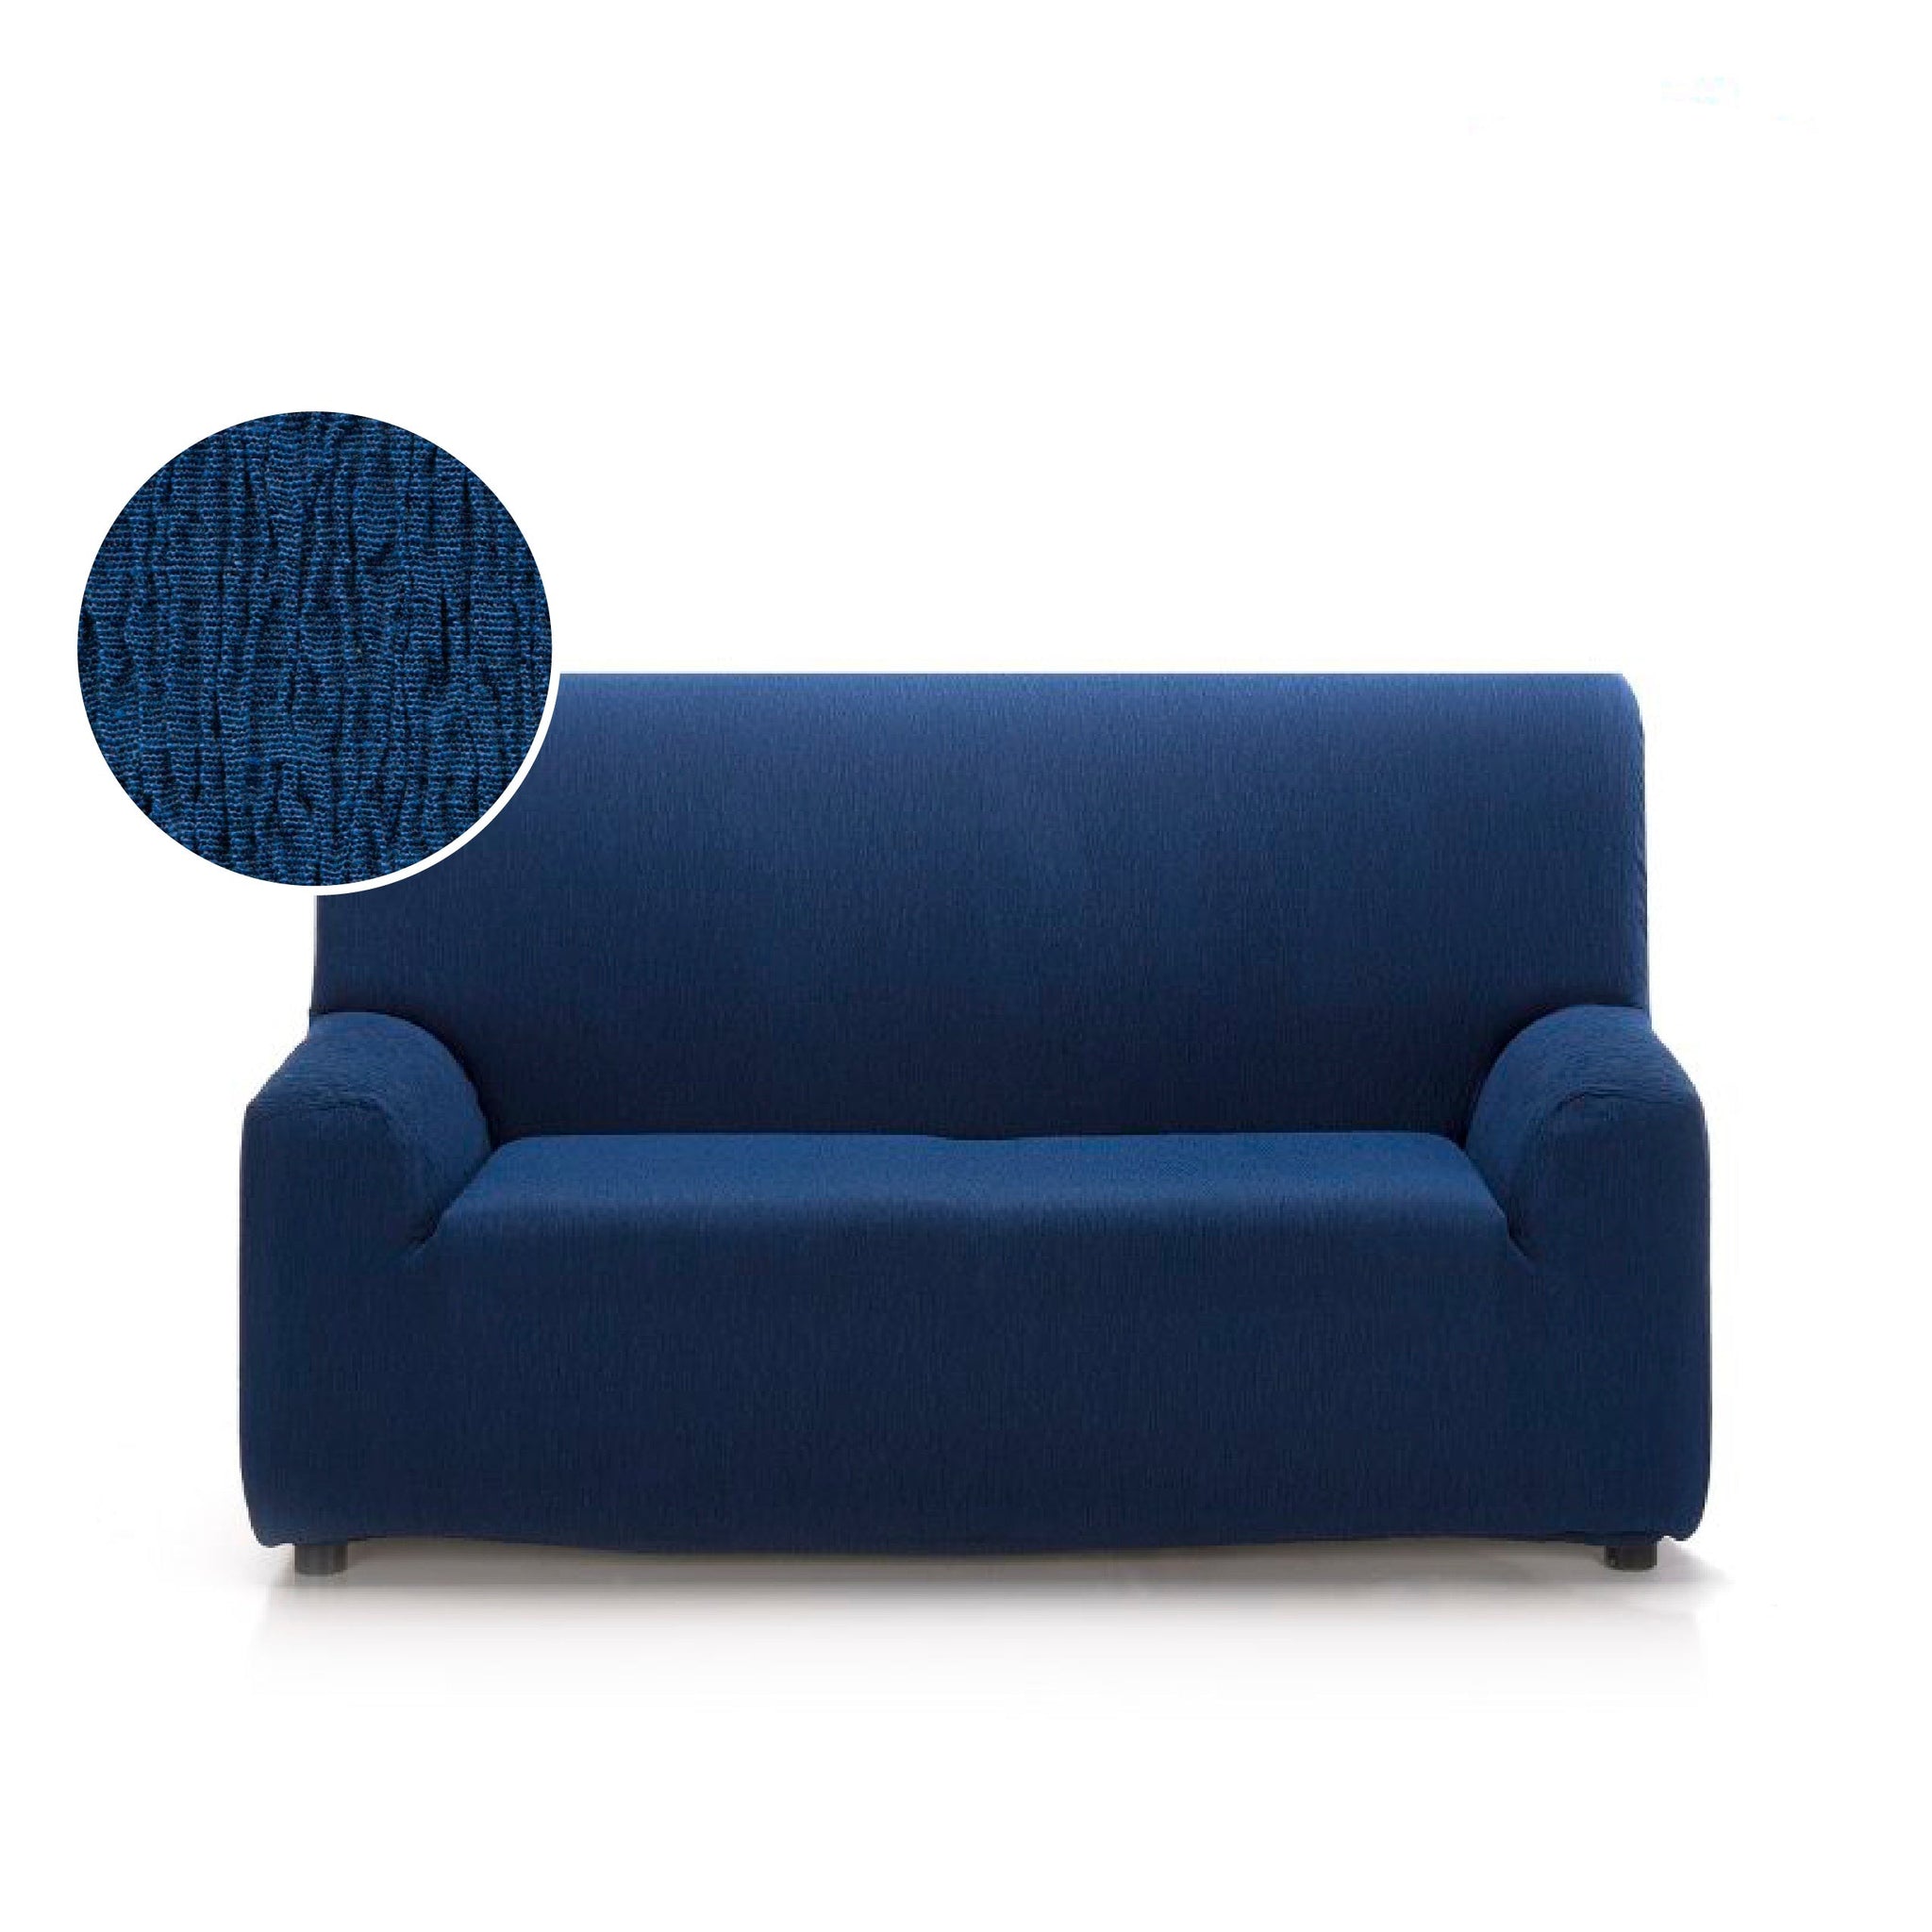 Cubre sofa 2 puestos 120cm x180cm..79.900 5/5 – CreacionesTV